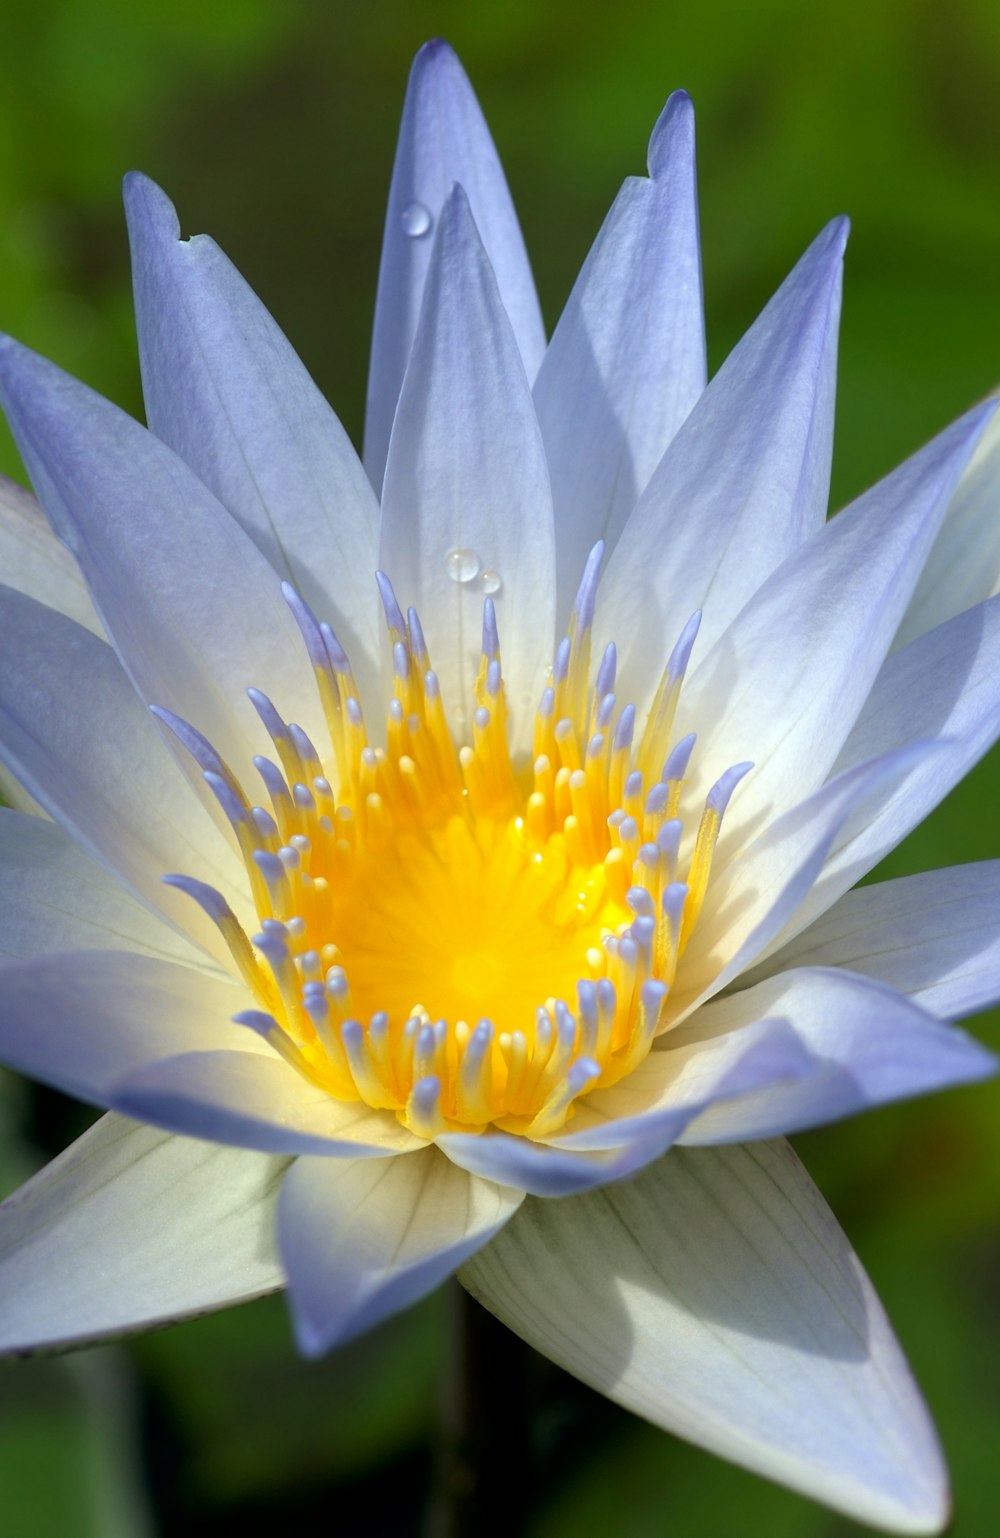 un fiore blu e giallo con gocce d'acqua su di esso